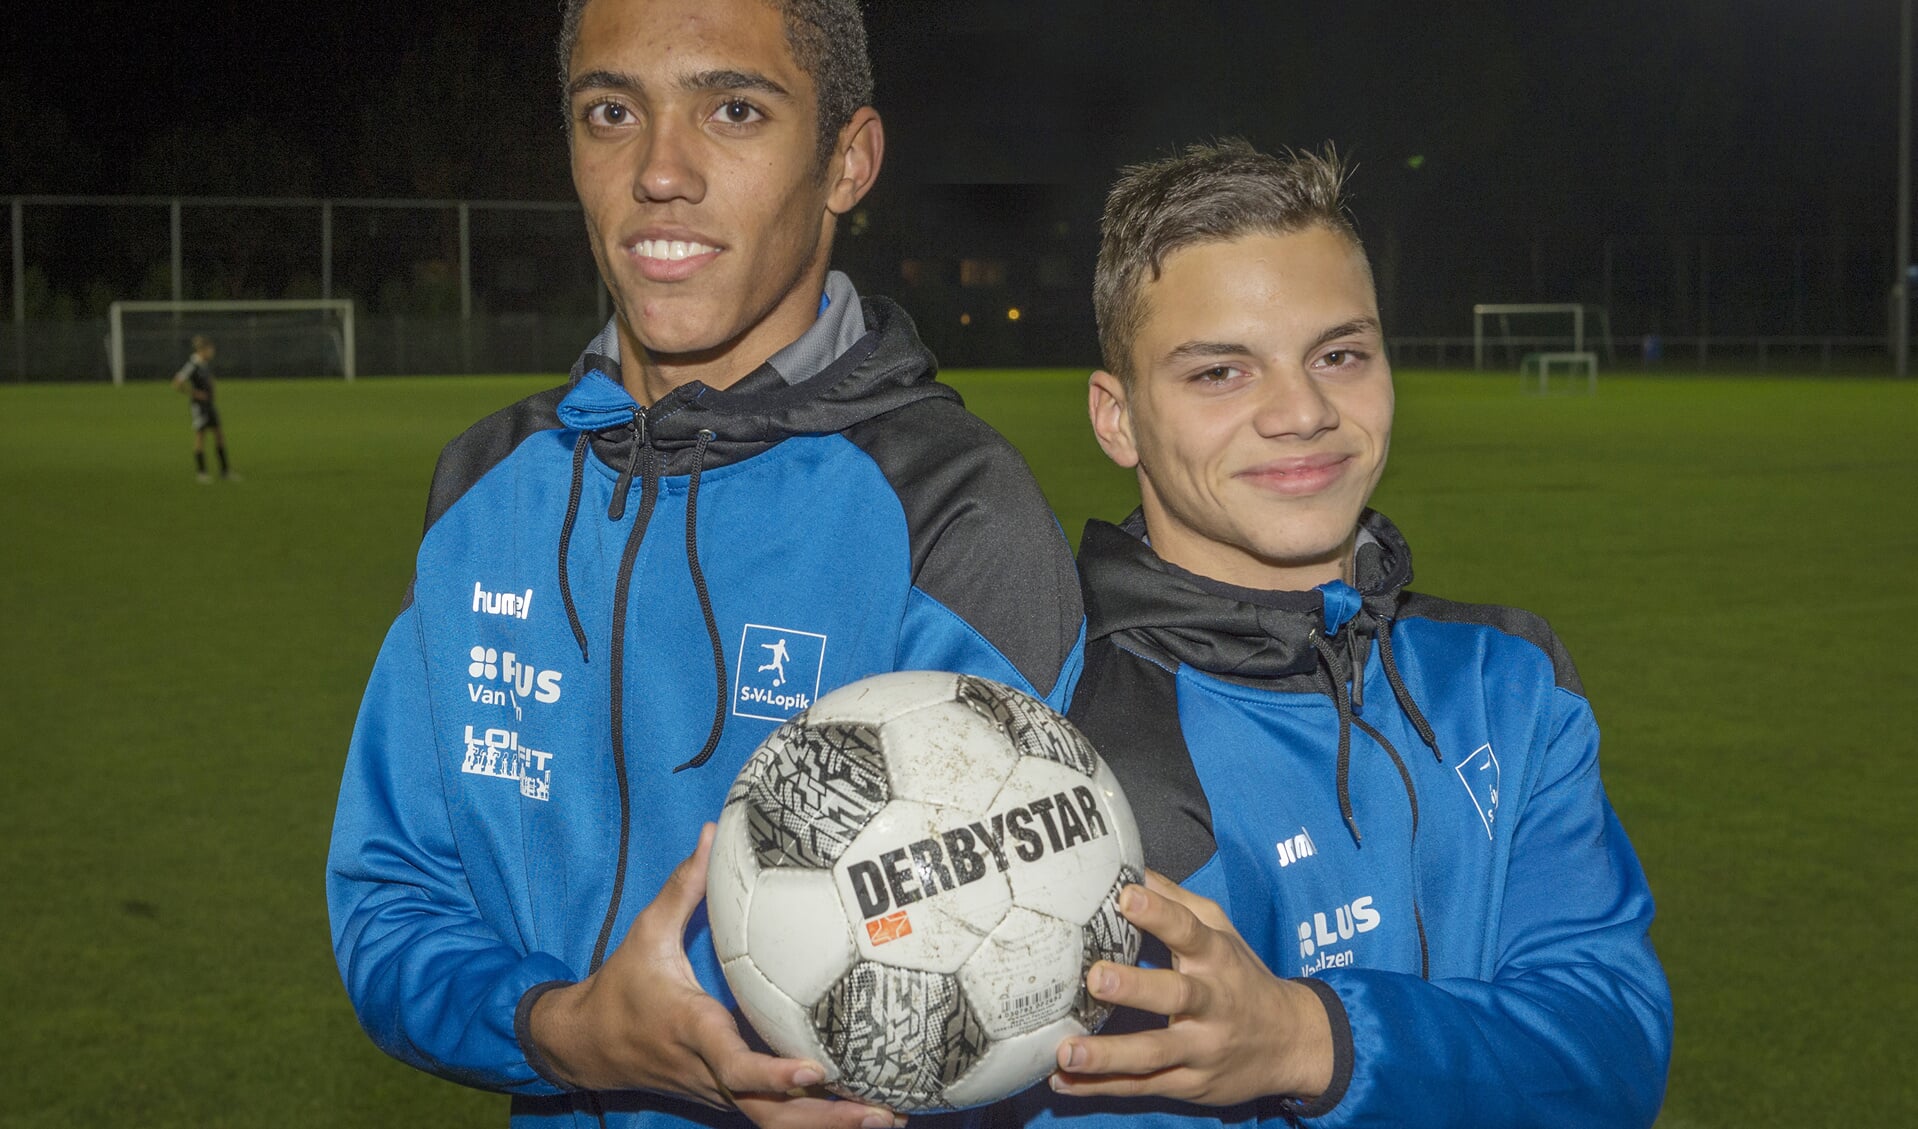 Junioren Keja en De Bruin vinden snel hun draai in SV Lopik 1